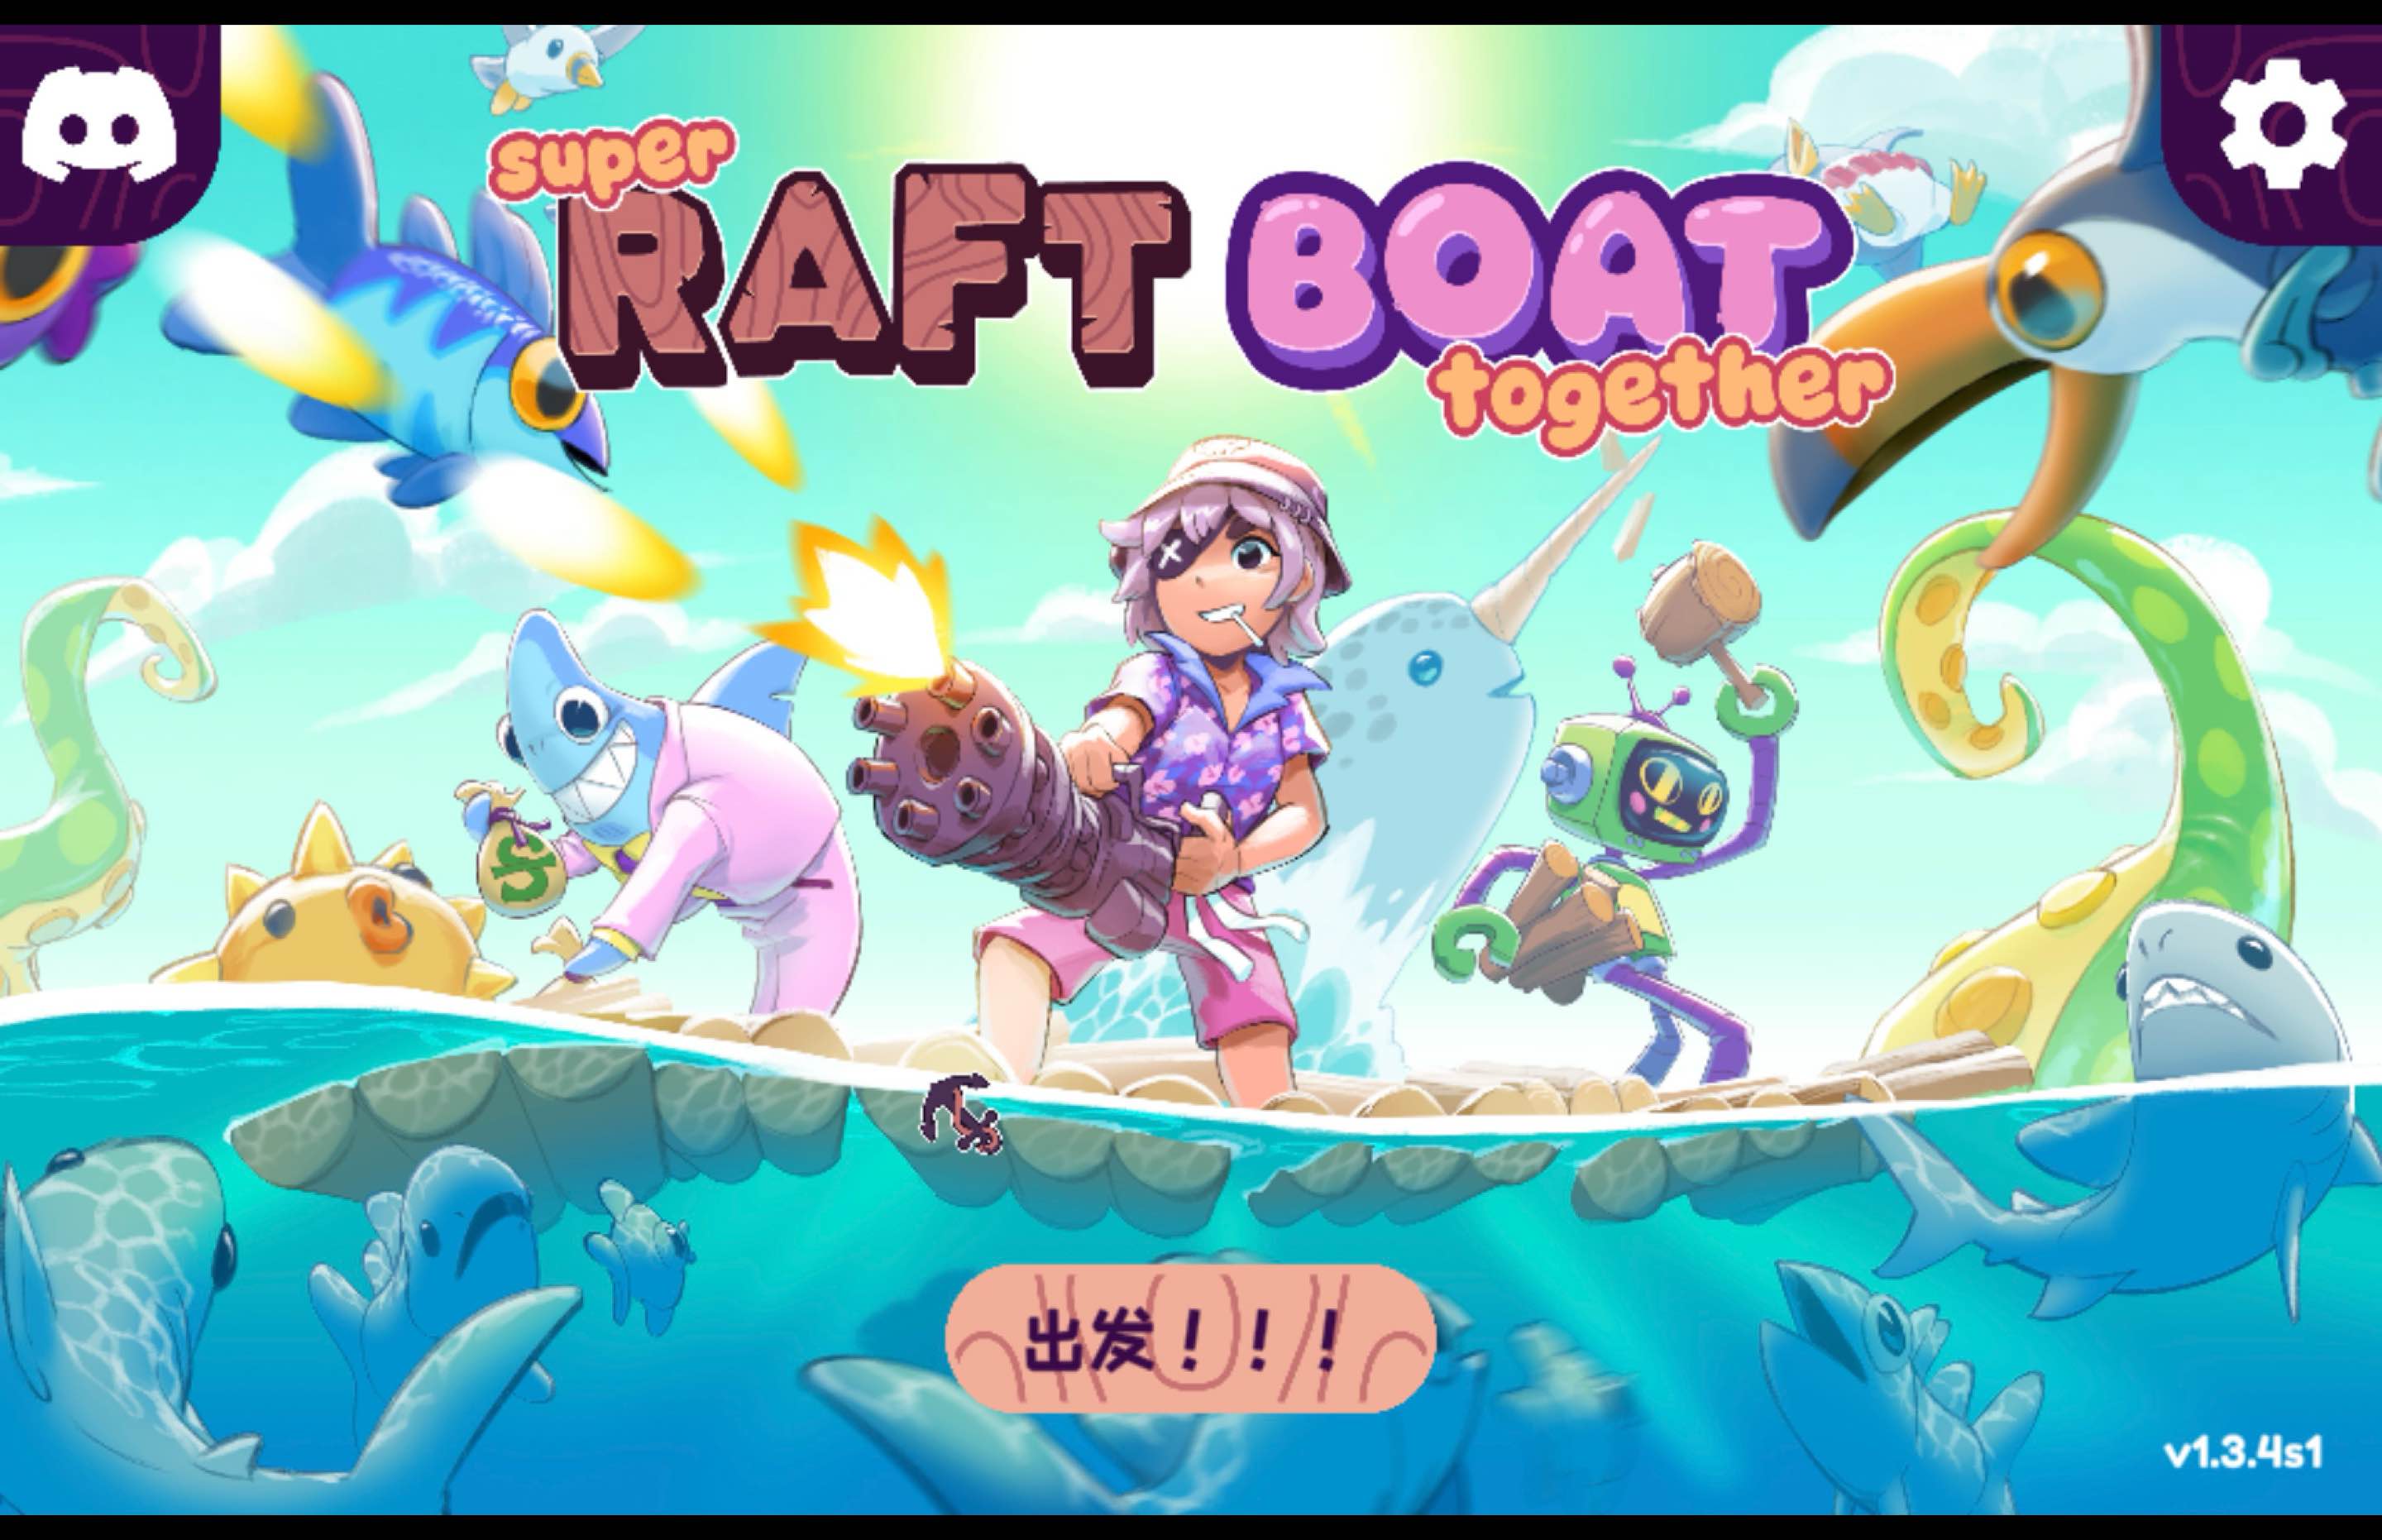 超级木筏 for Mac Super Raft Boat Together v1.3.4 中文移植版 苹果电脑